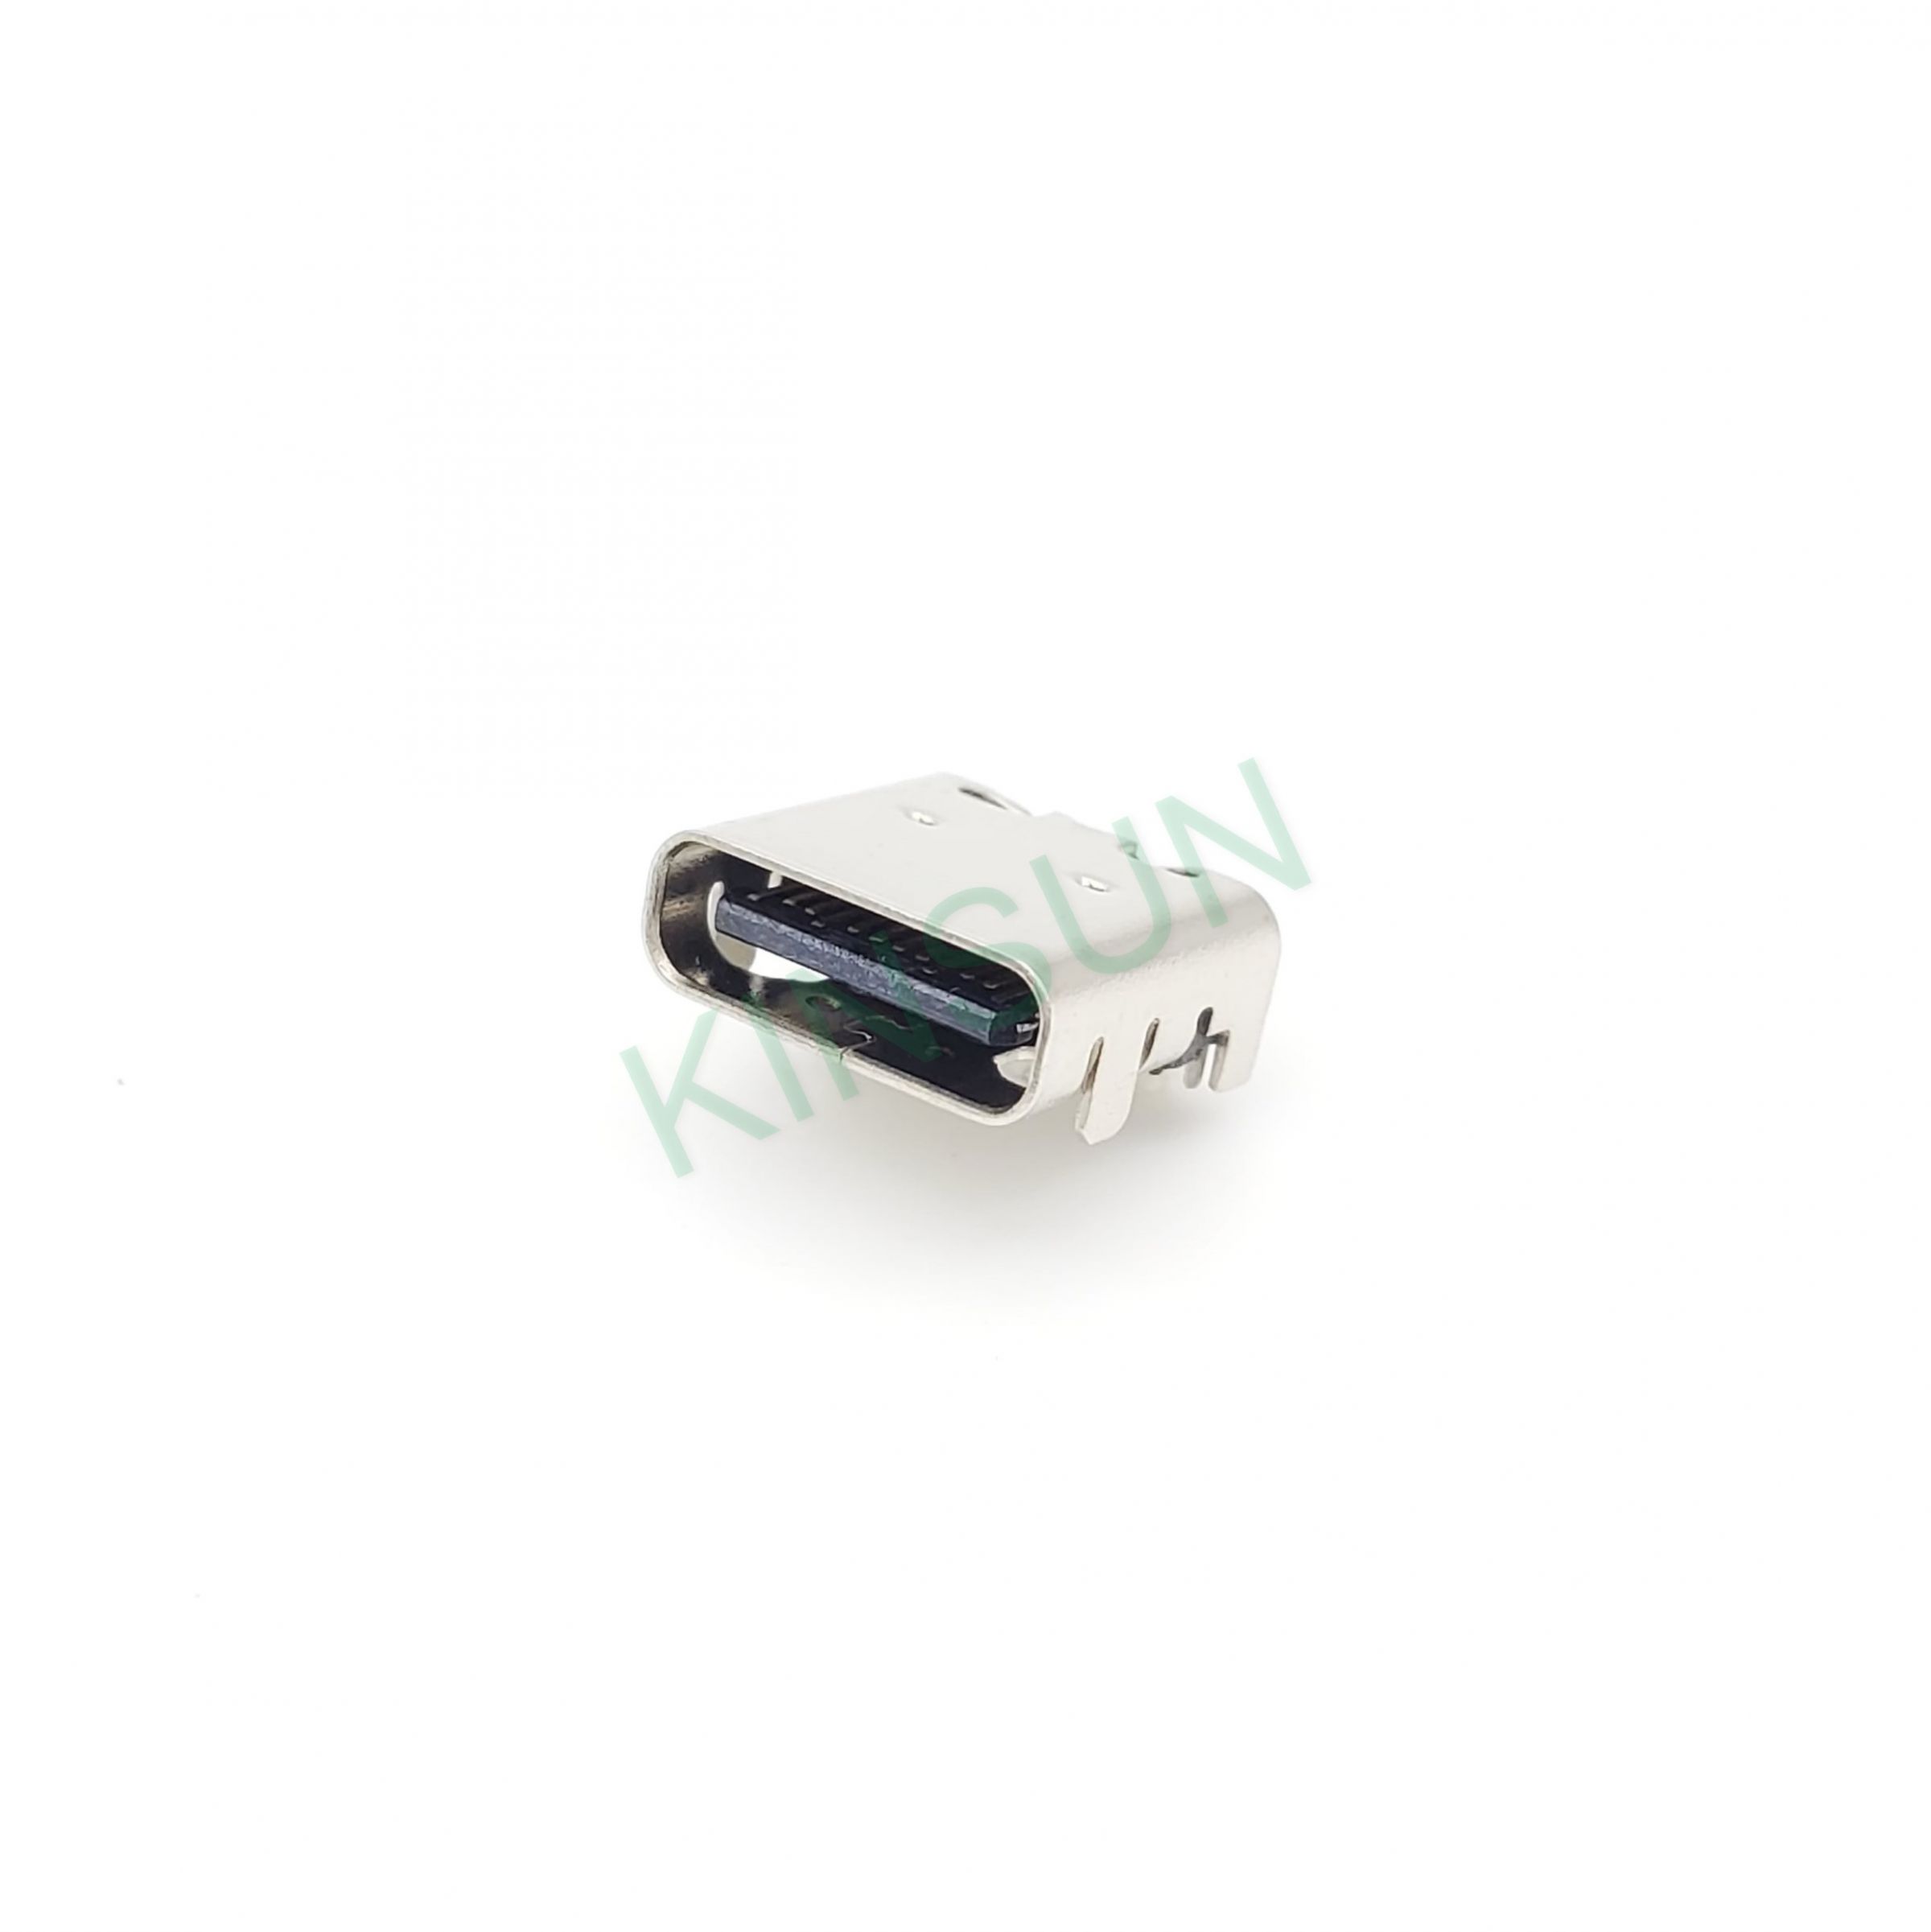 USB Type-C 3.0-kontakterna finns tillgängliga i 24-pin och 16-pin versioner